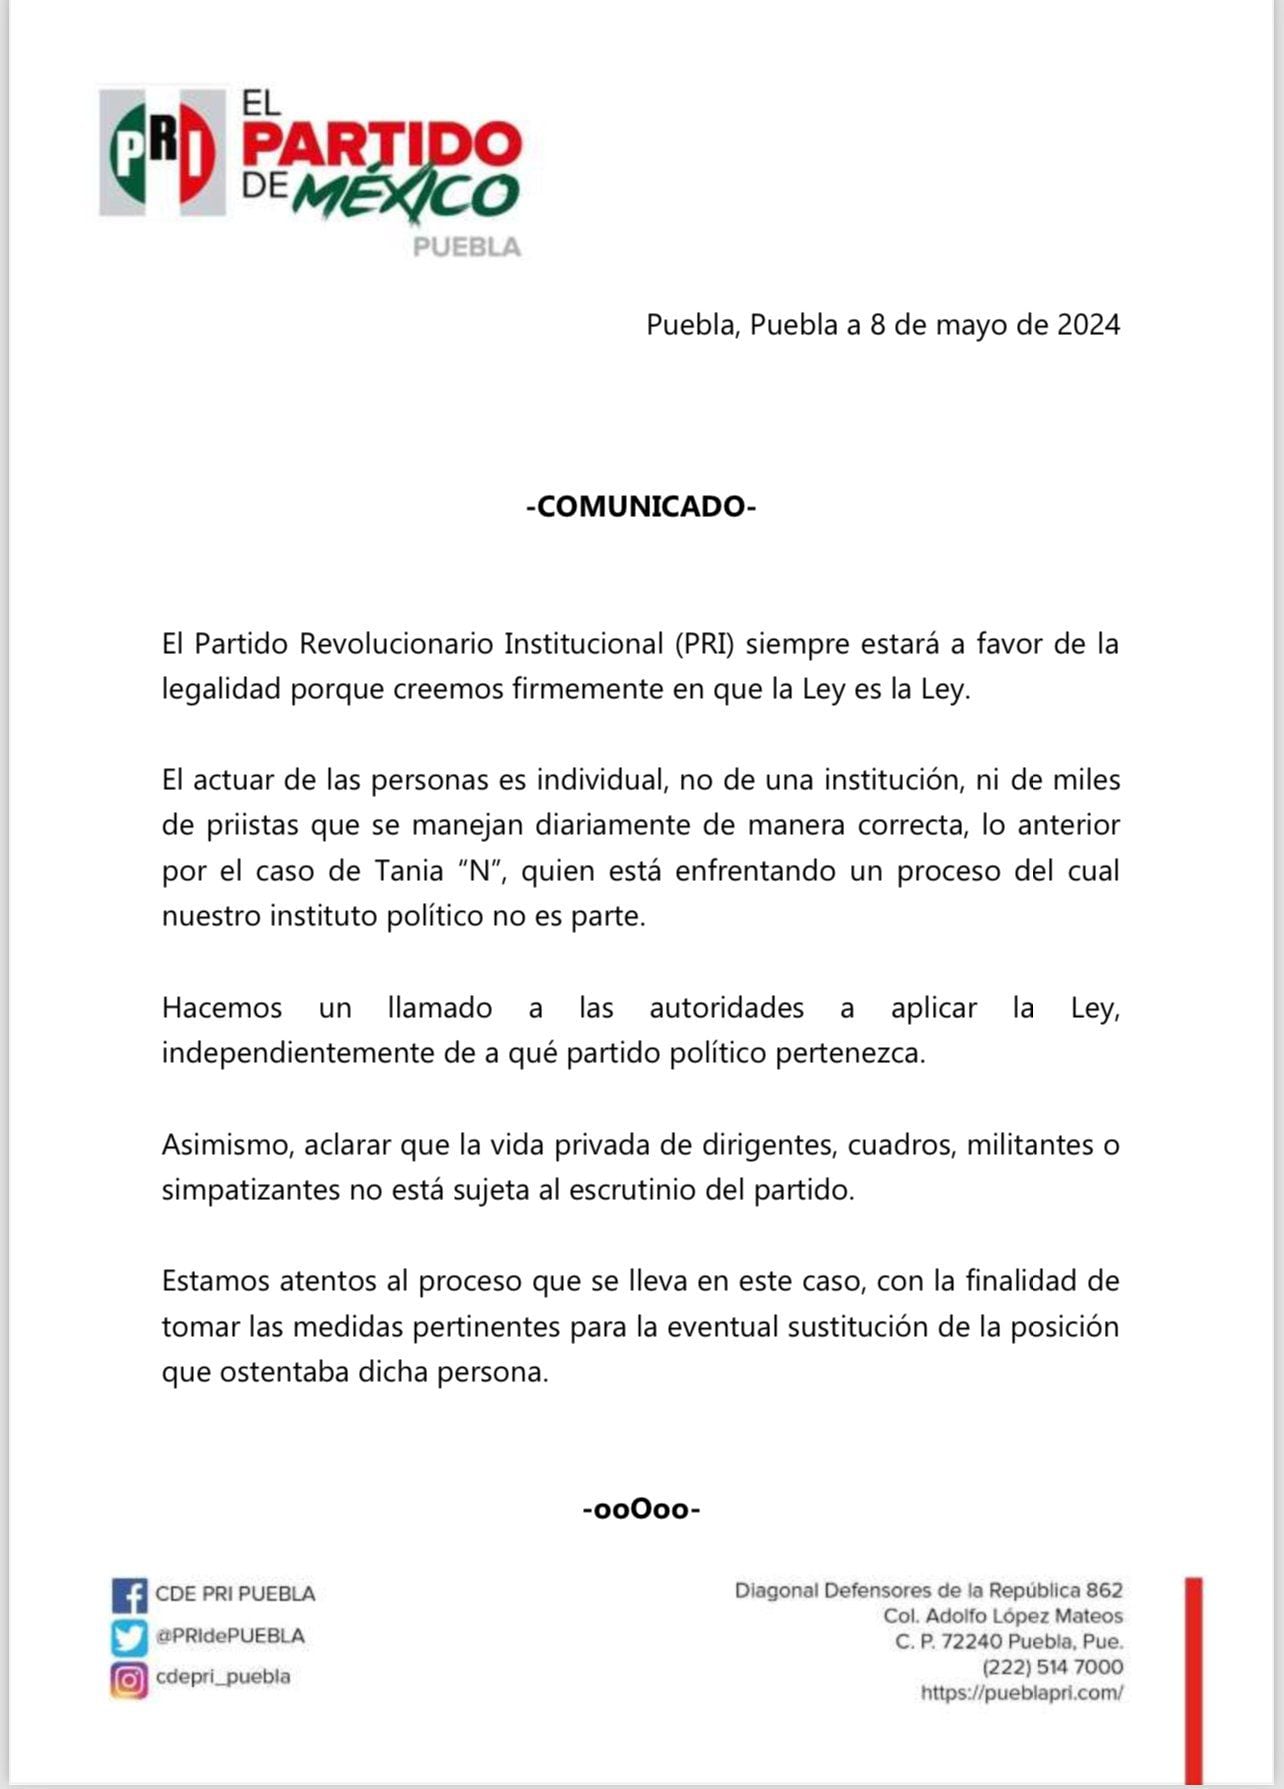 PRI-Puebla-Tania "N"-Tania Trejo-México-8 de mayo